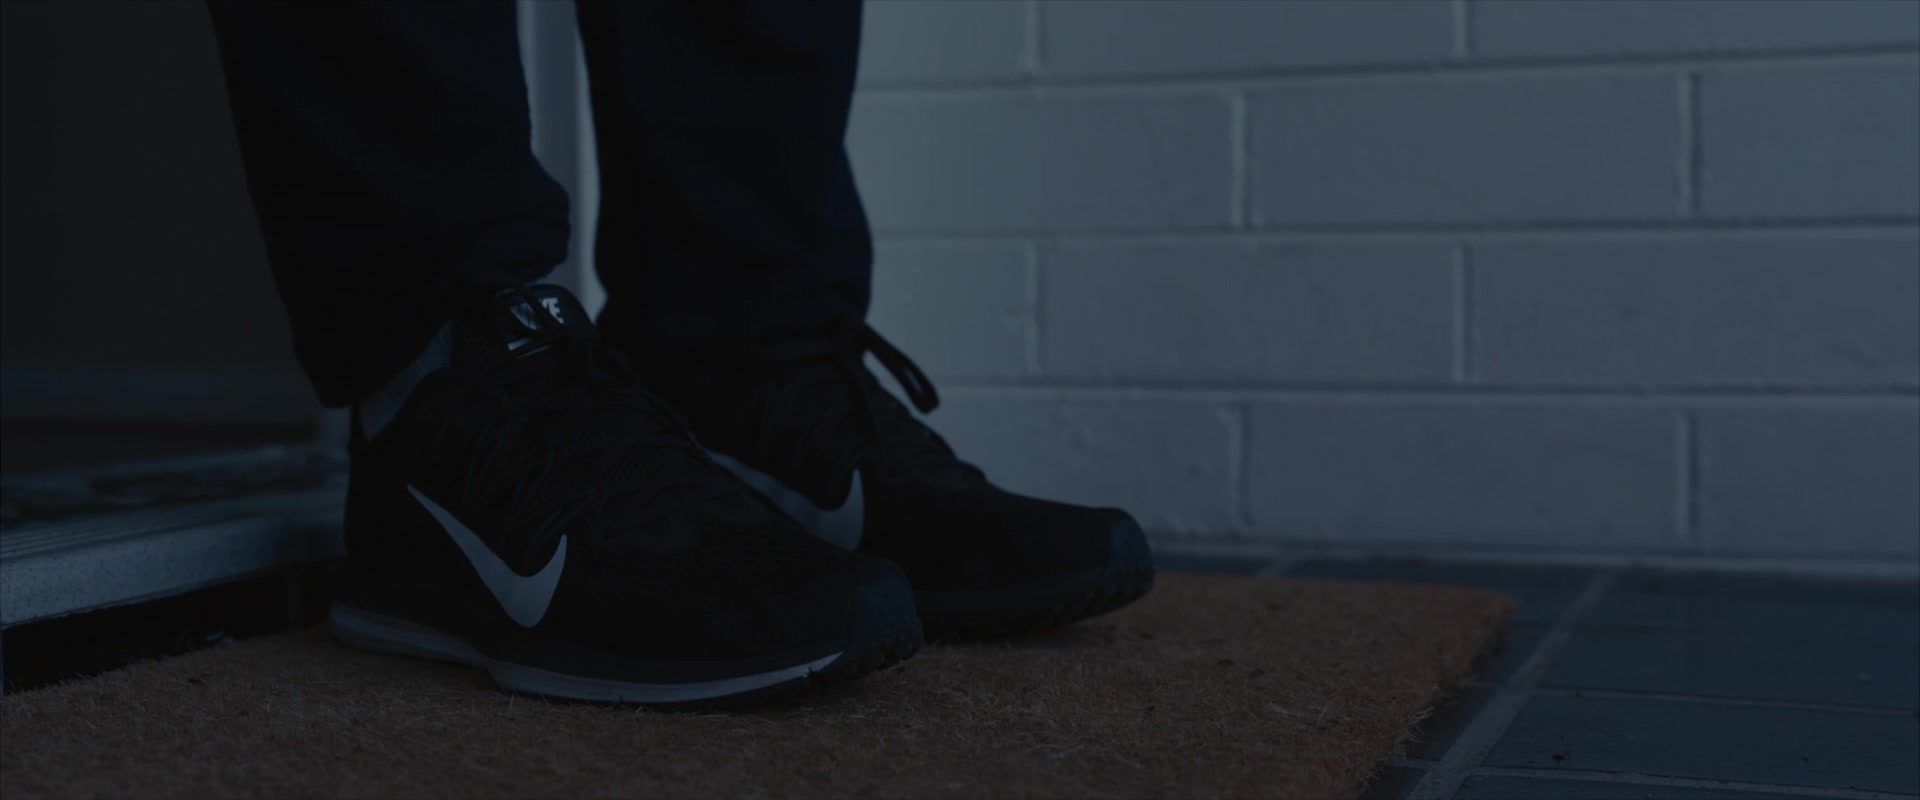 Nike Air Zoom Winflo 5 Sneakers Worn By 